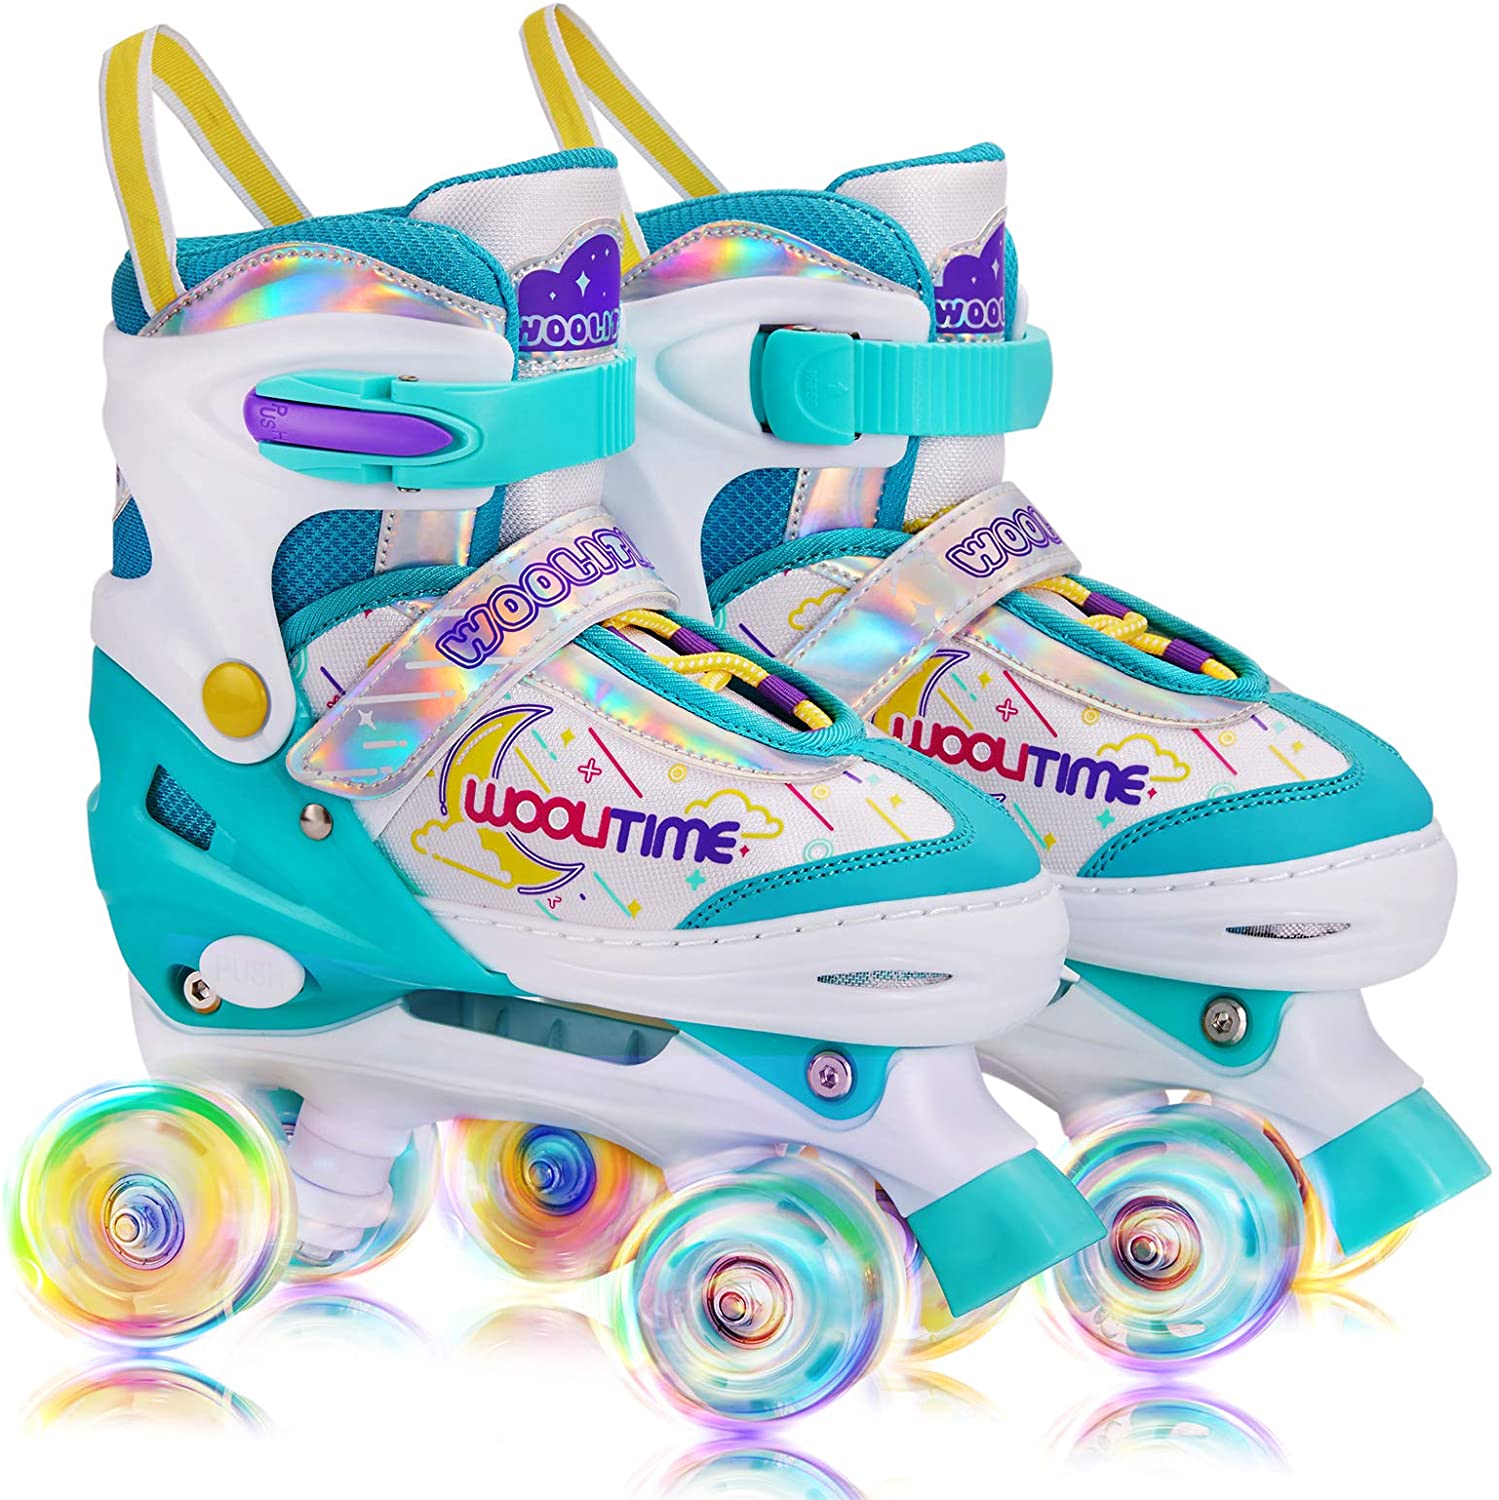 Woolitime Adjustable Roller Skates for Girls and Boys